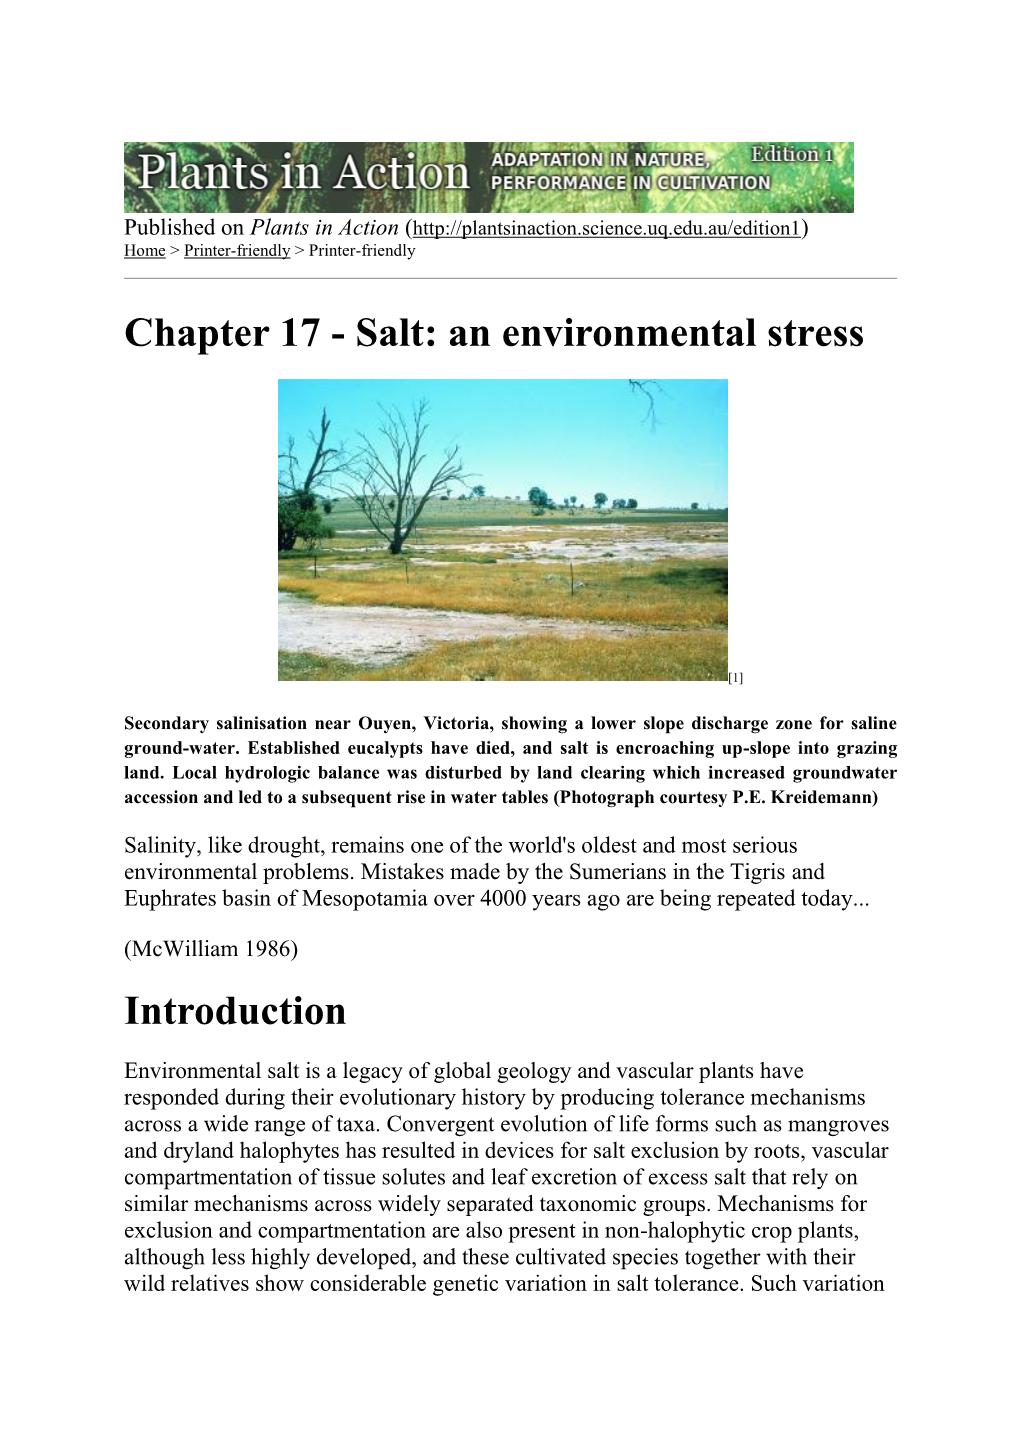 Chapter 17 - Salt: an Environmental Stress